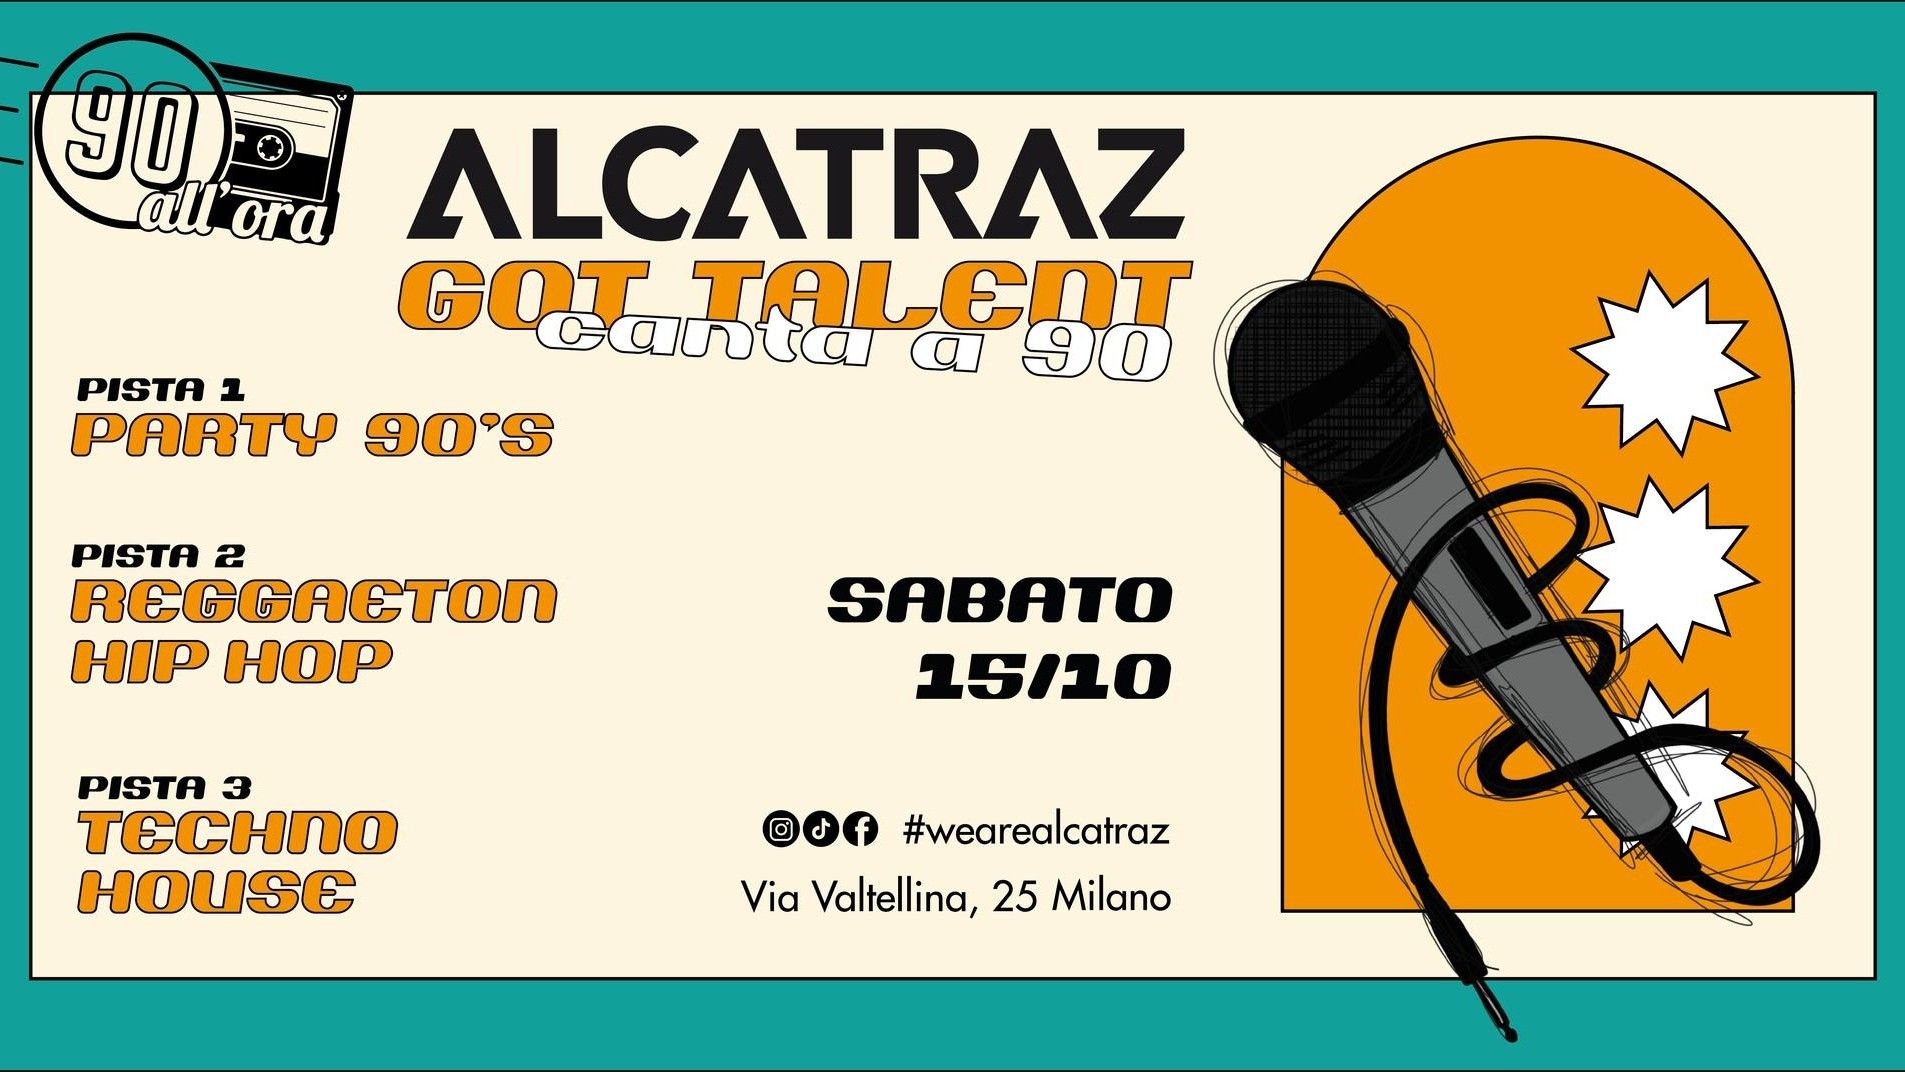 90 All'ora + Alcatraz’ Got Talent Canta A '90